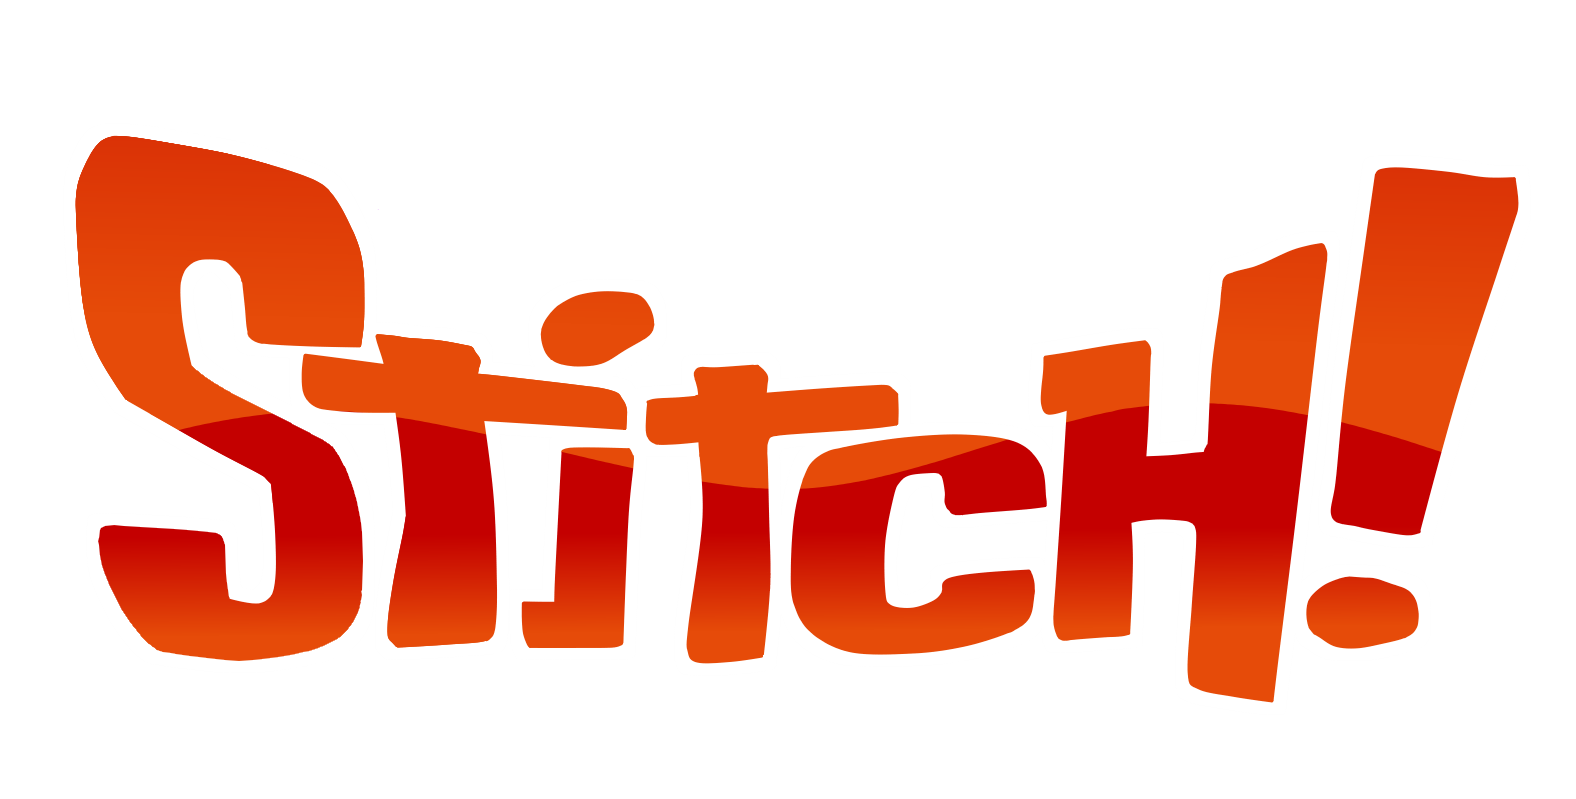 Stitching Logo - Etsy